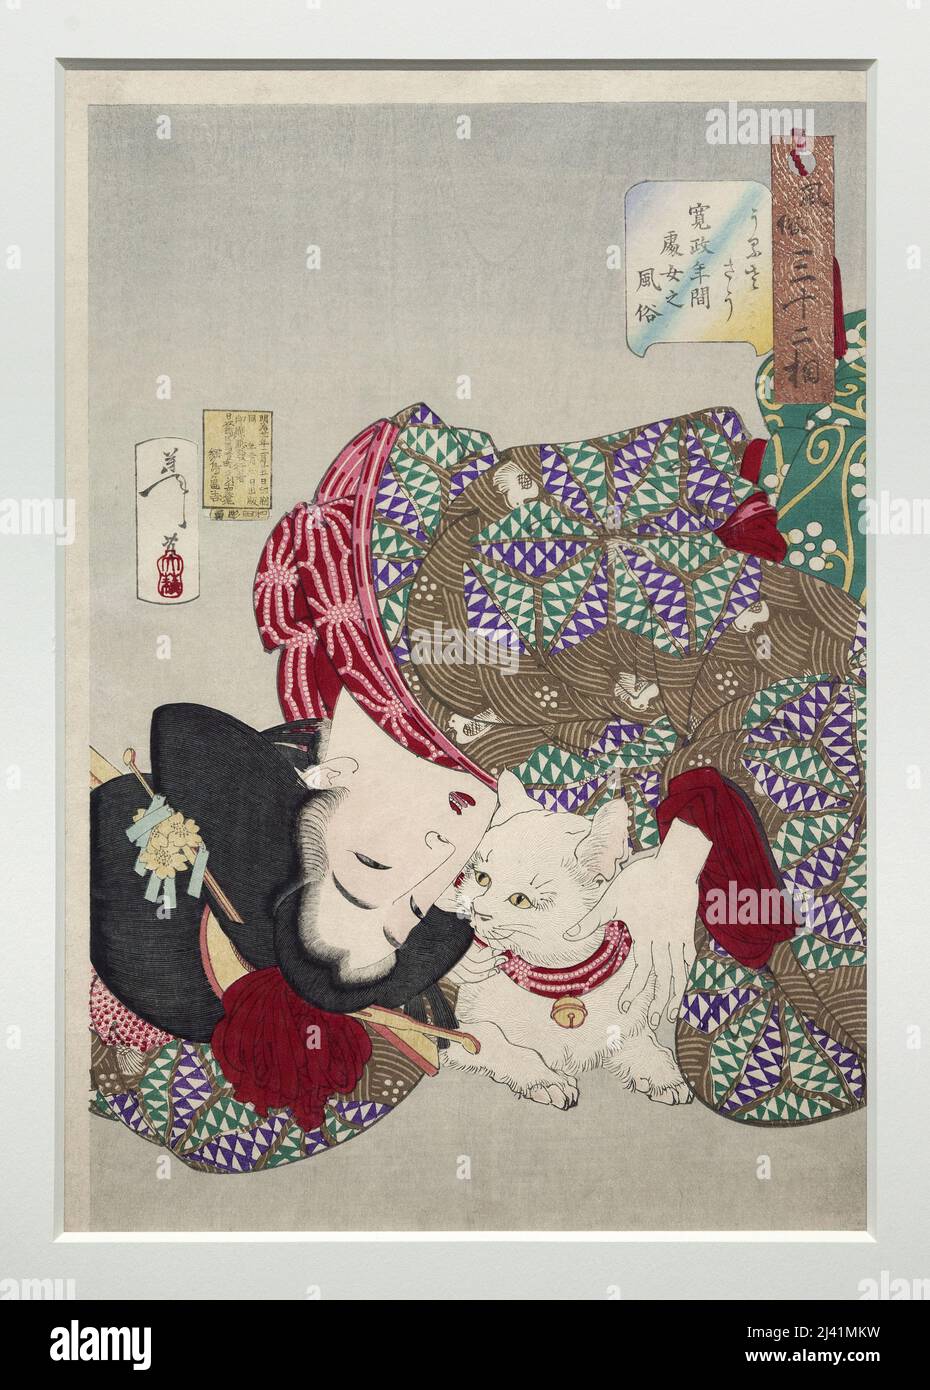 Ennuyante, jeune femme de l’ere Kansei (1789-1801), estampe faisant partie de la serie 32 aspeces des coutumes et des manieres, gravure en bois (estampe japonaise), realisee en 1888 par Tsukioka Yoshitoshi (1839-1892). Foto Stock